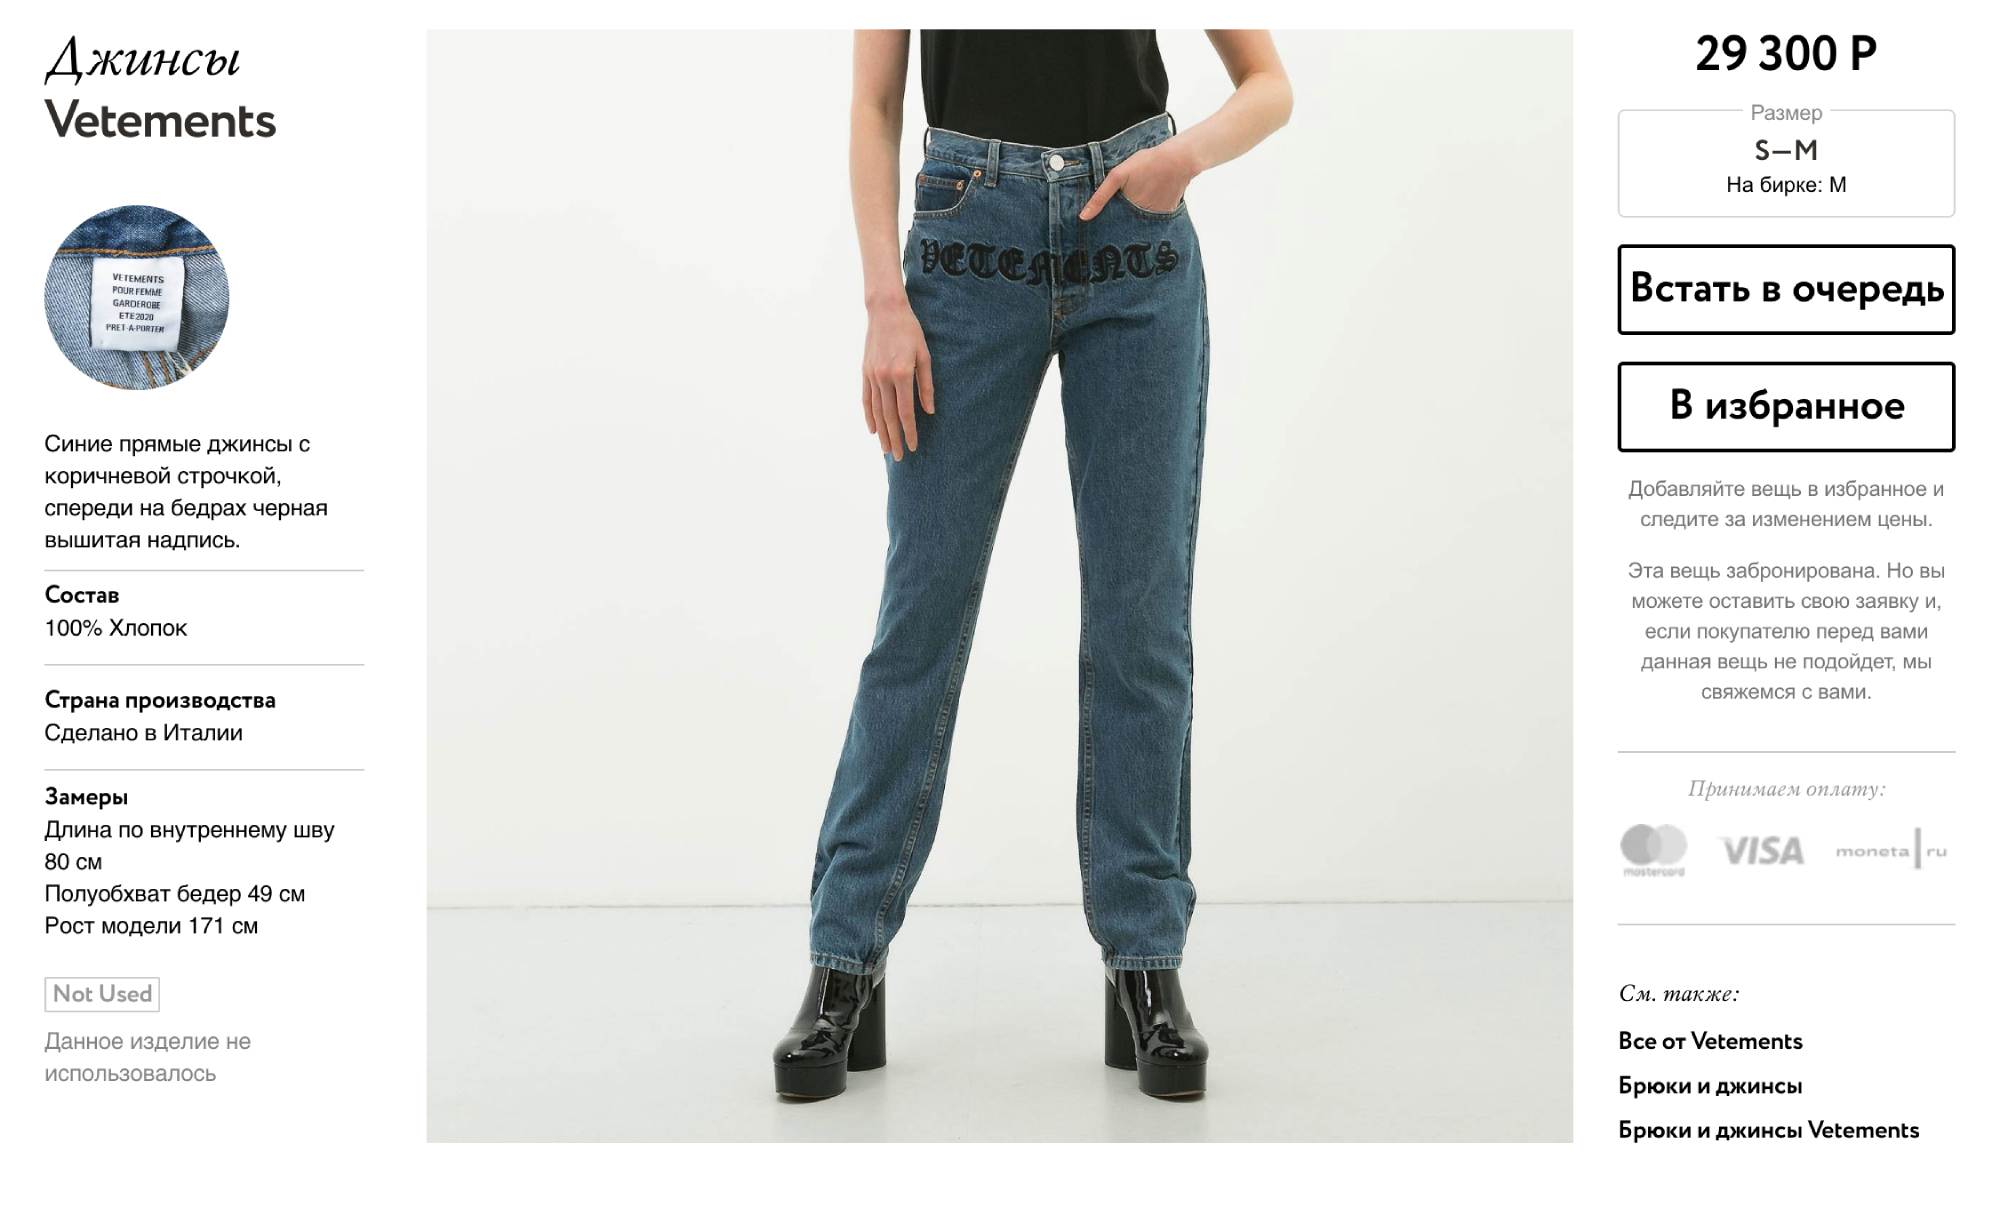 Самые дорогие джинсы в Second Friend Store — абсолютно новые Vetements. Их продают почти за 30 000 ₽. Источник: secondfriendstore.ru